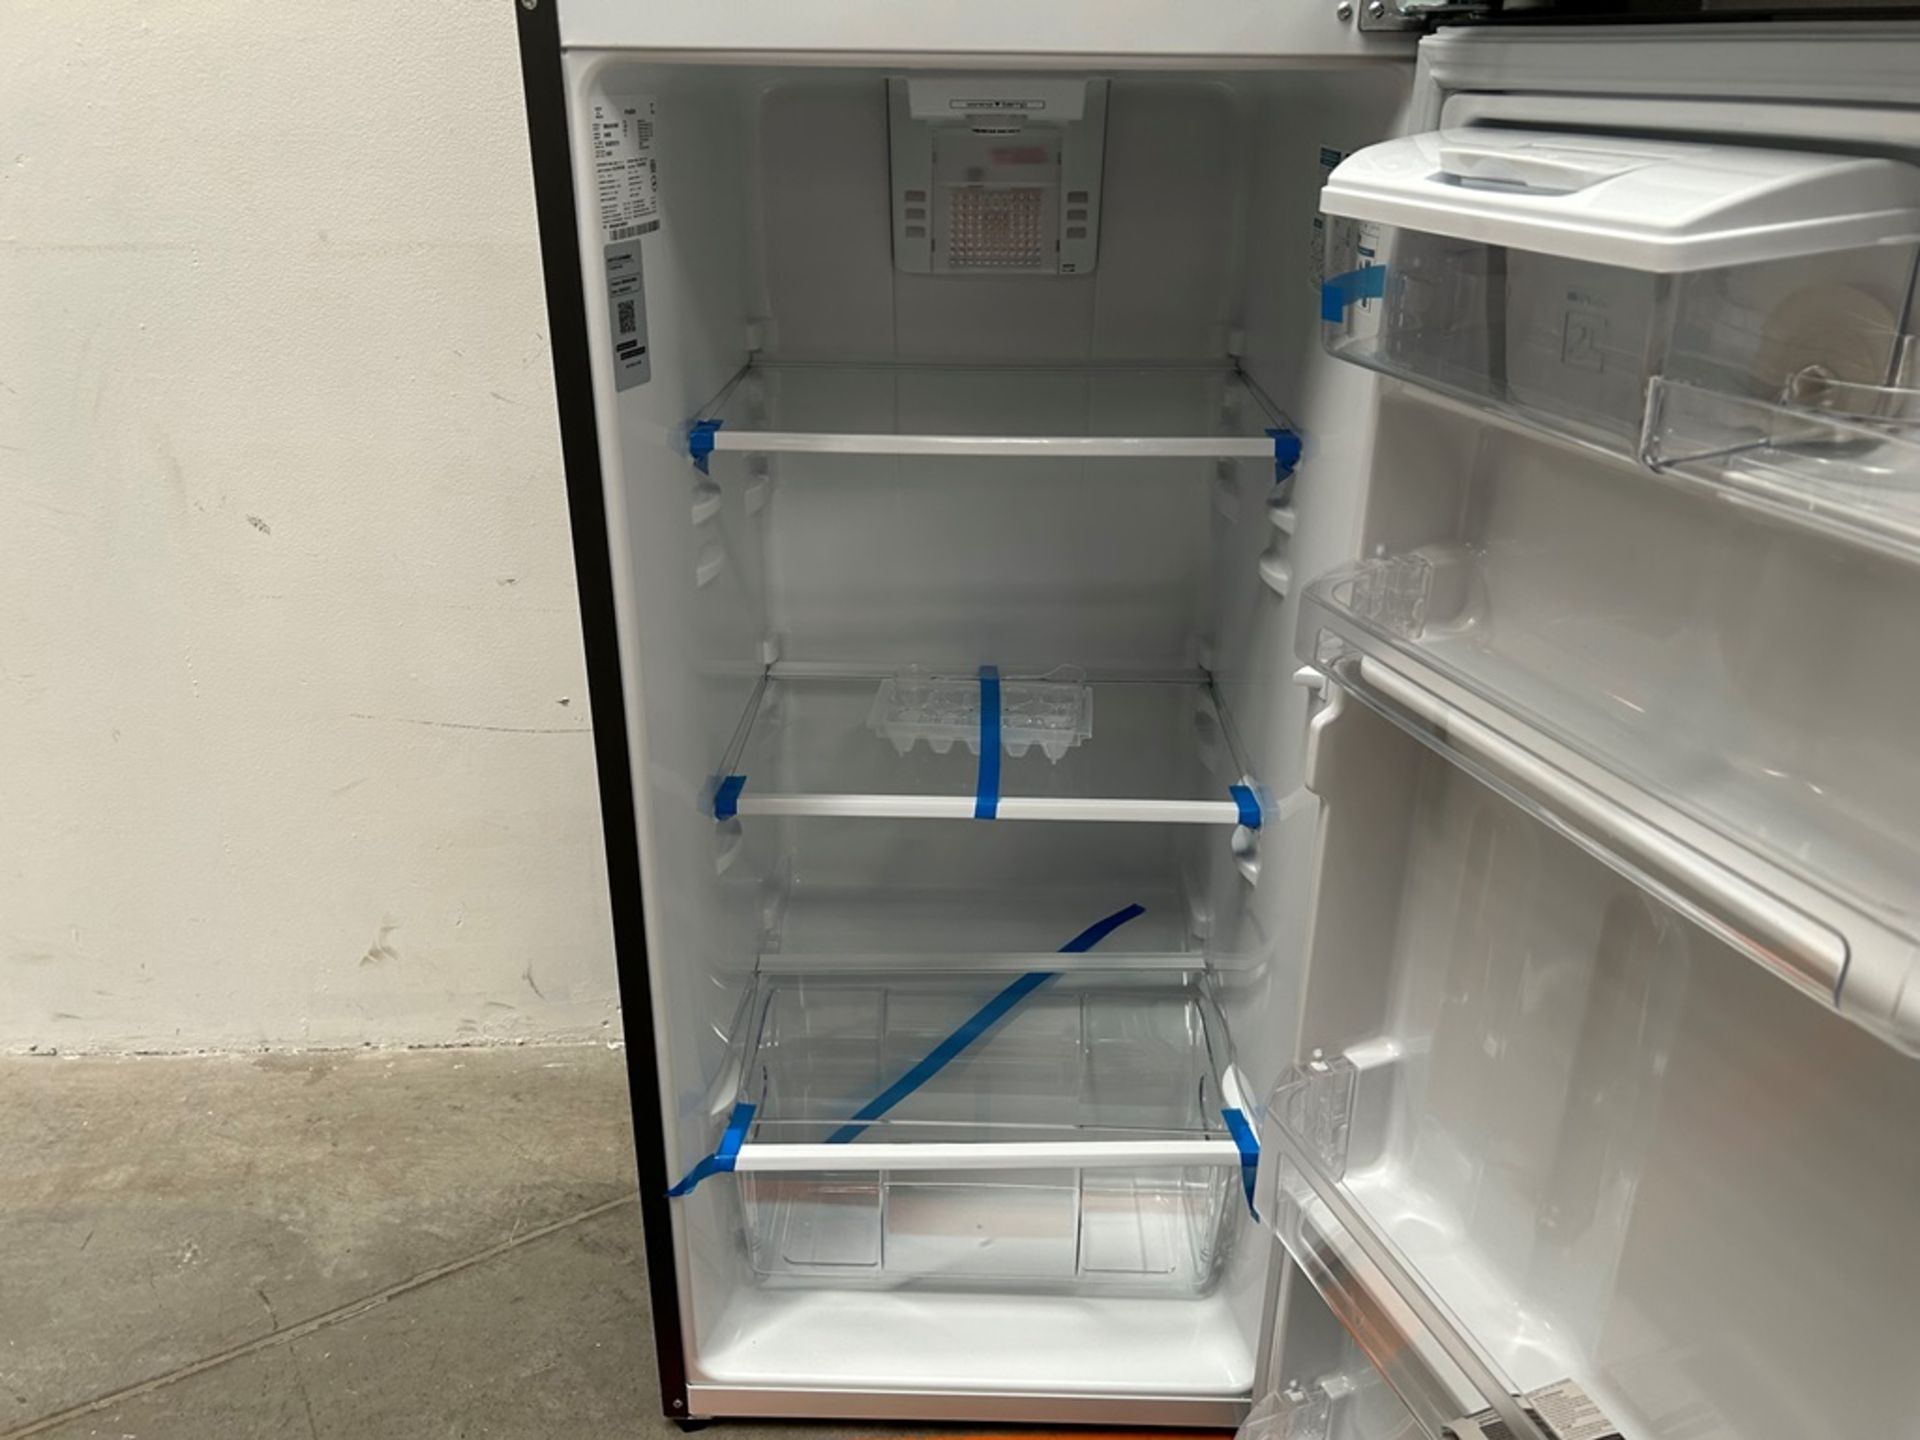 Lote de 2 refrigeradores contiene: 1 refrigerador Marca MABE, Modelo RME360FVMRMA, Serie 816455, Co - Image 7 of 18